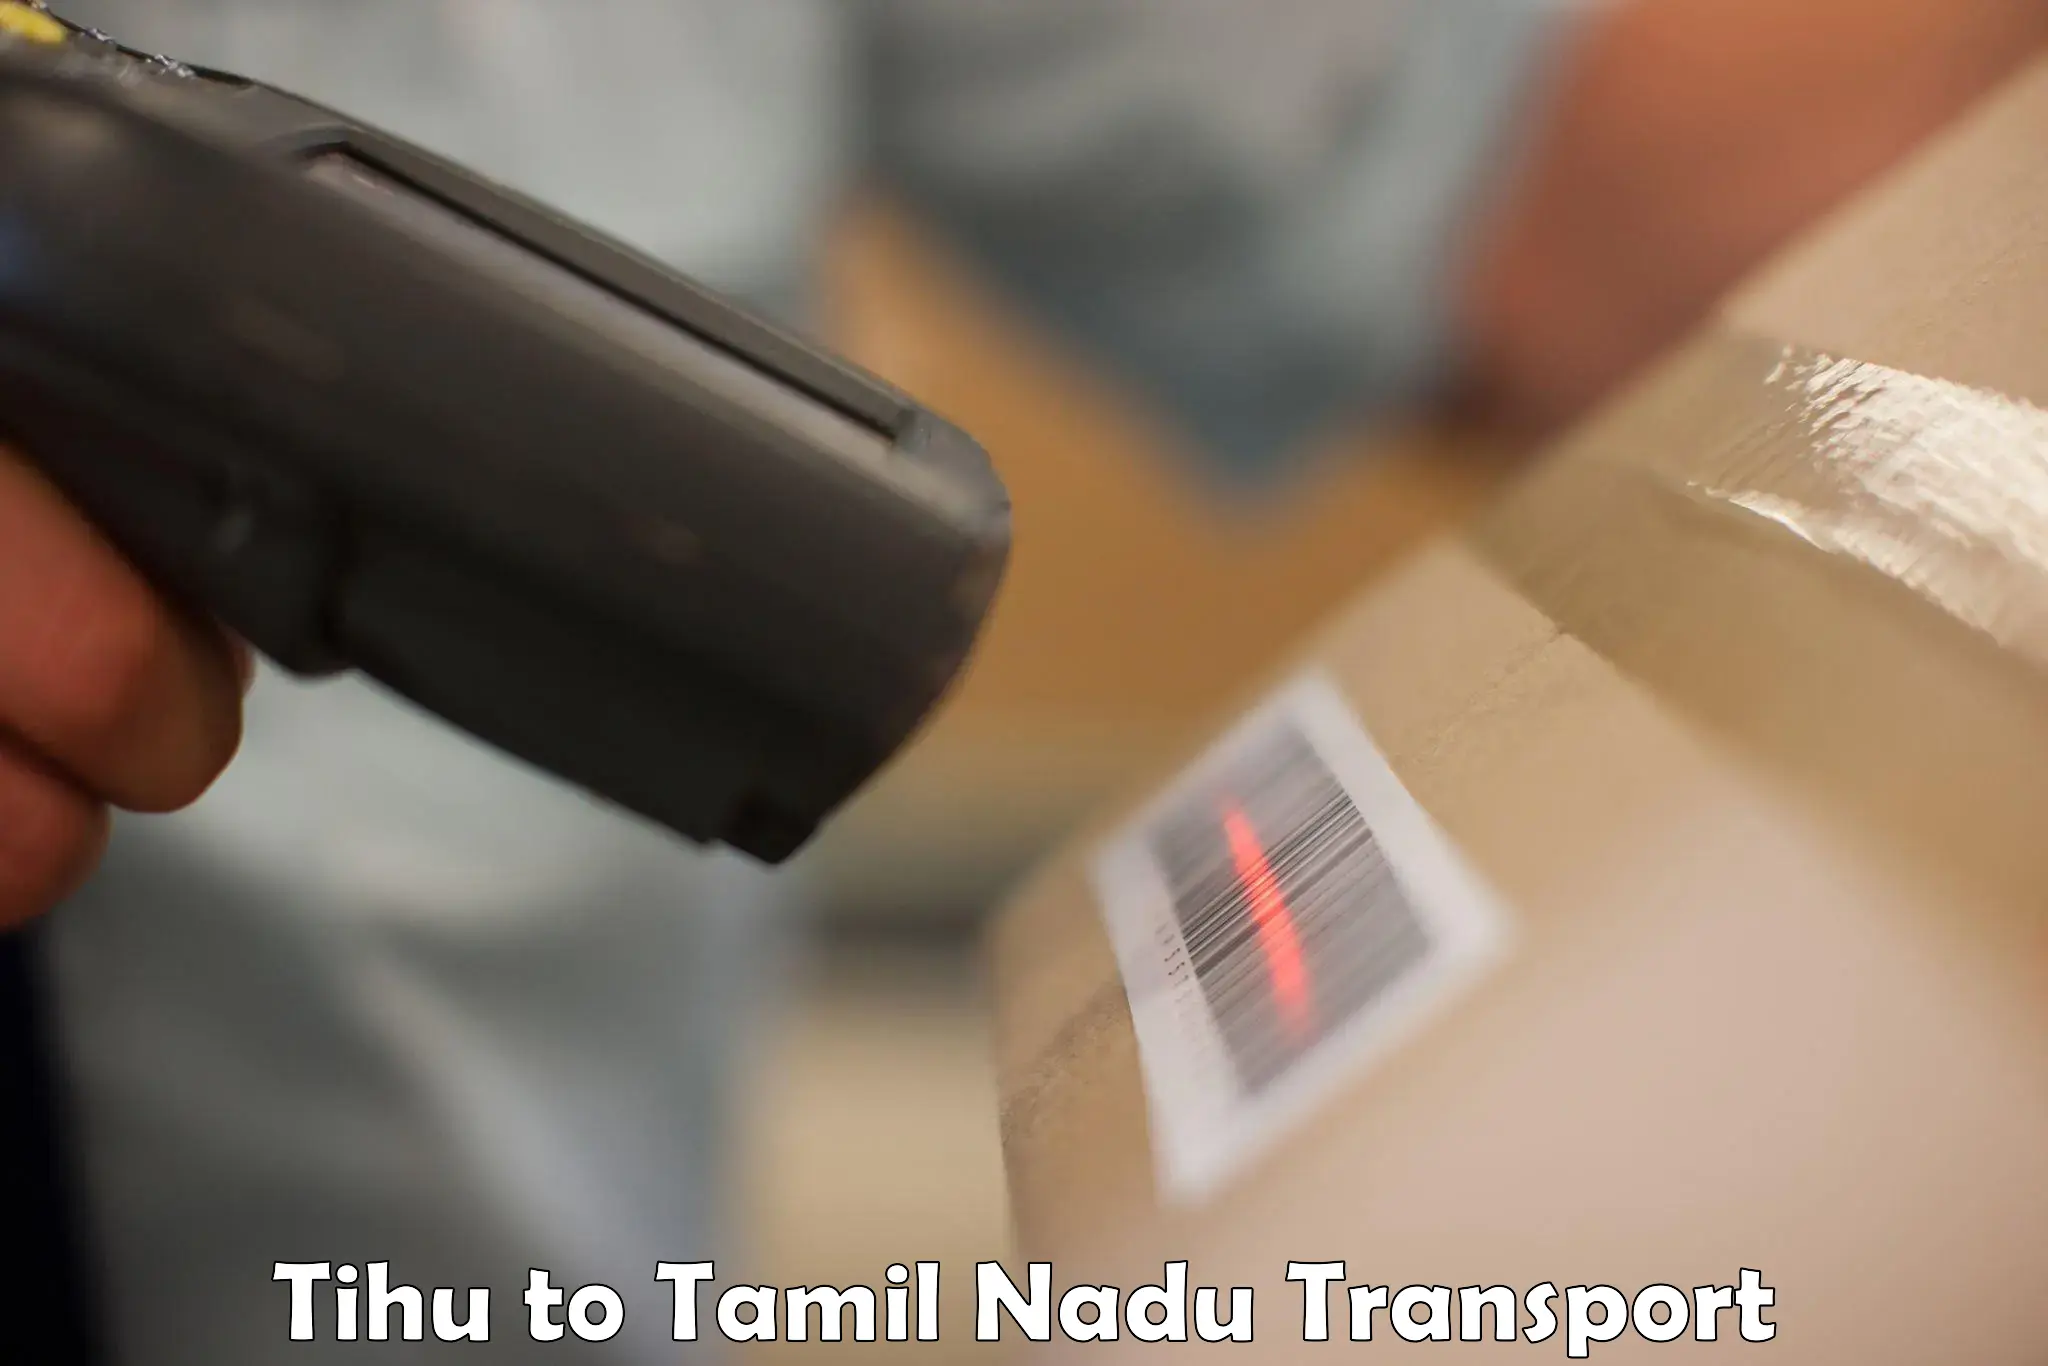 Furniture transport service in Tihu to Chennai Port